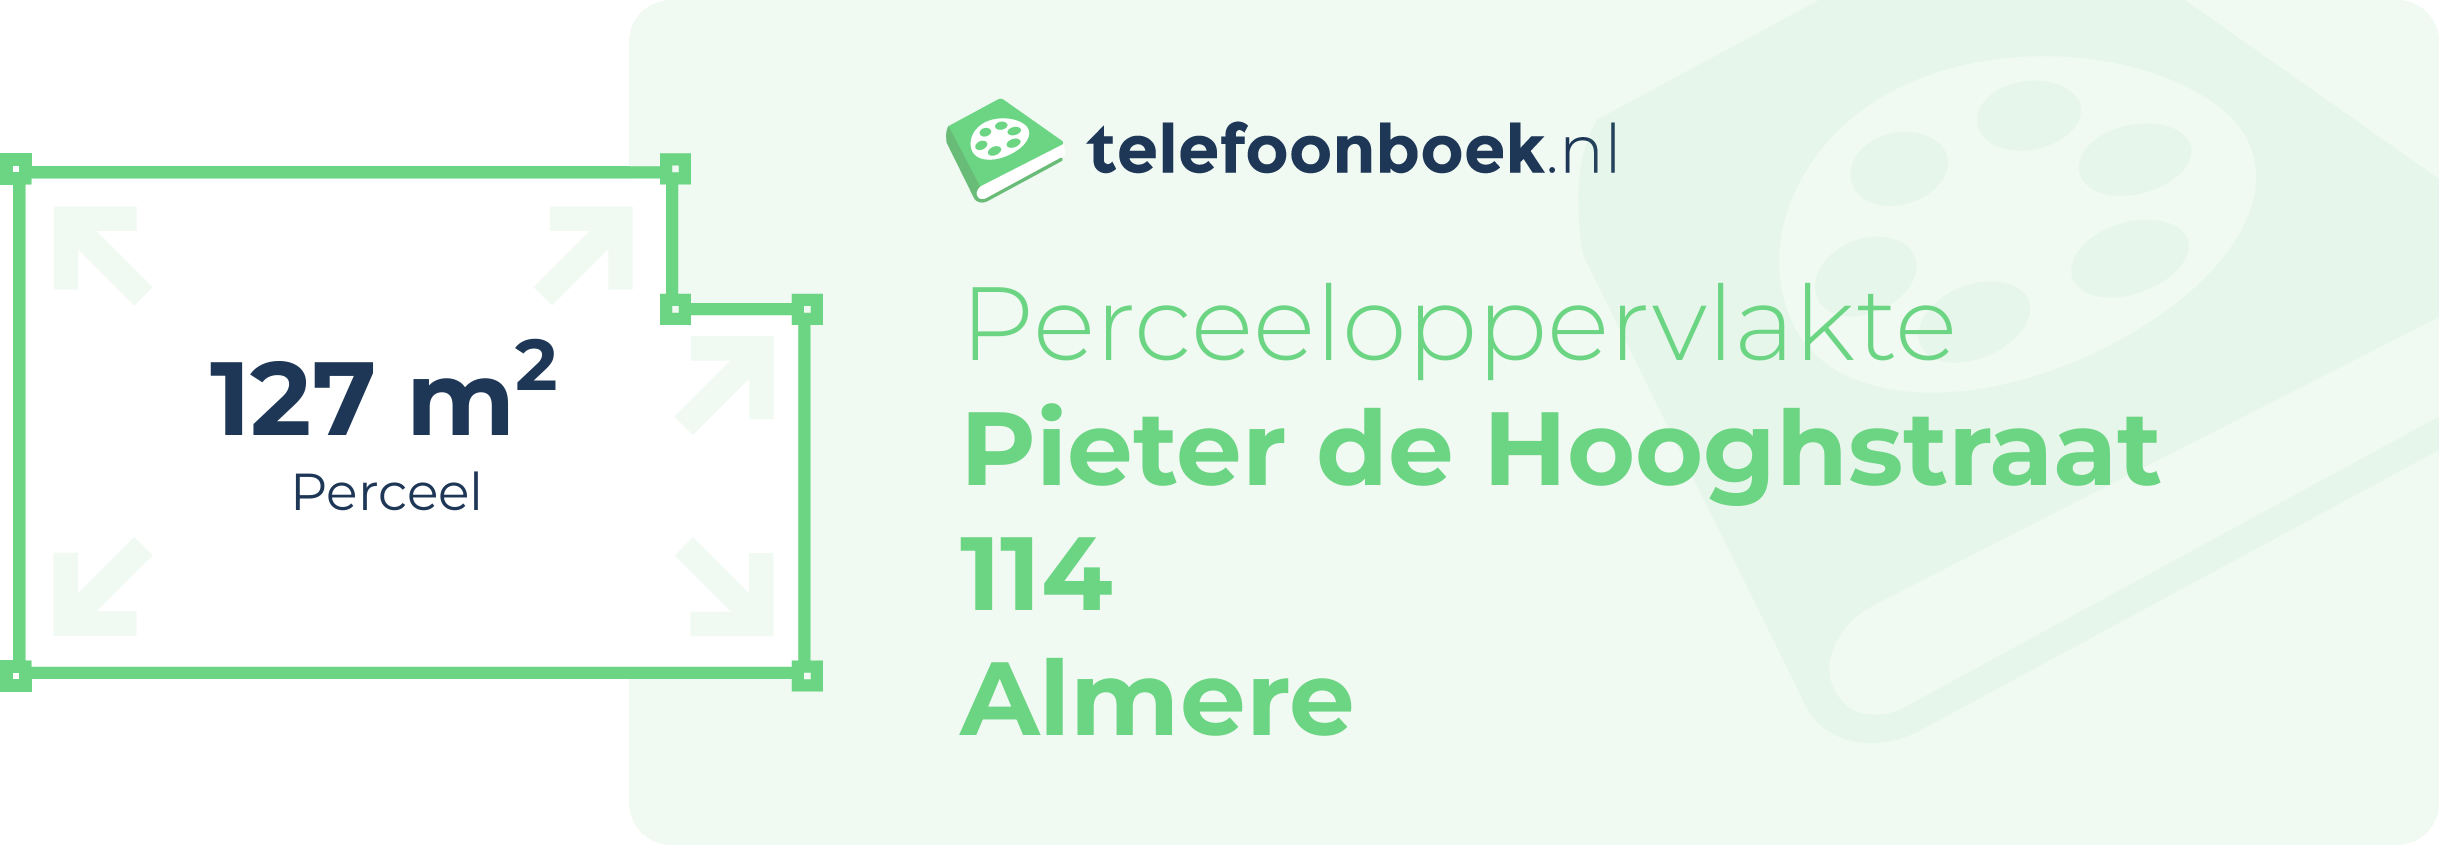 Perceeloppervlakte Pieter De Hooghstraat 114 Almere